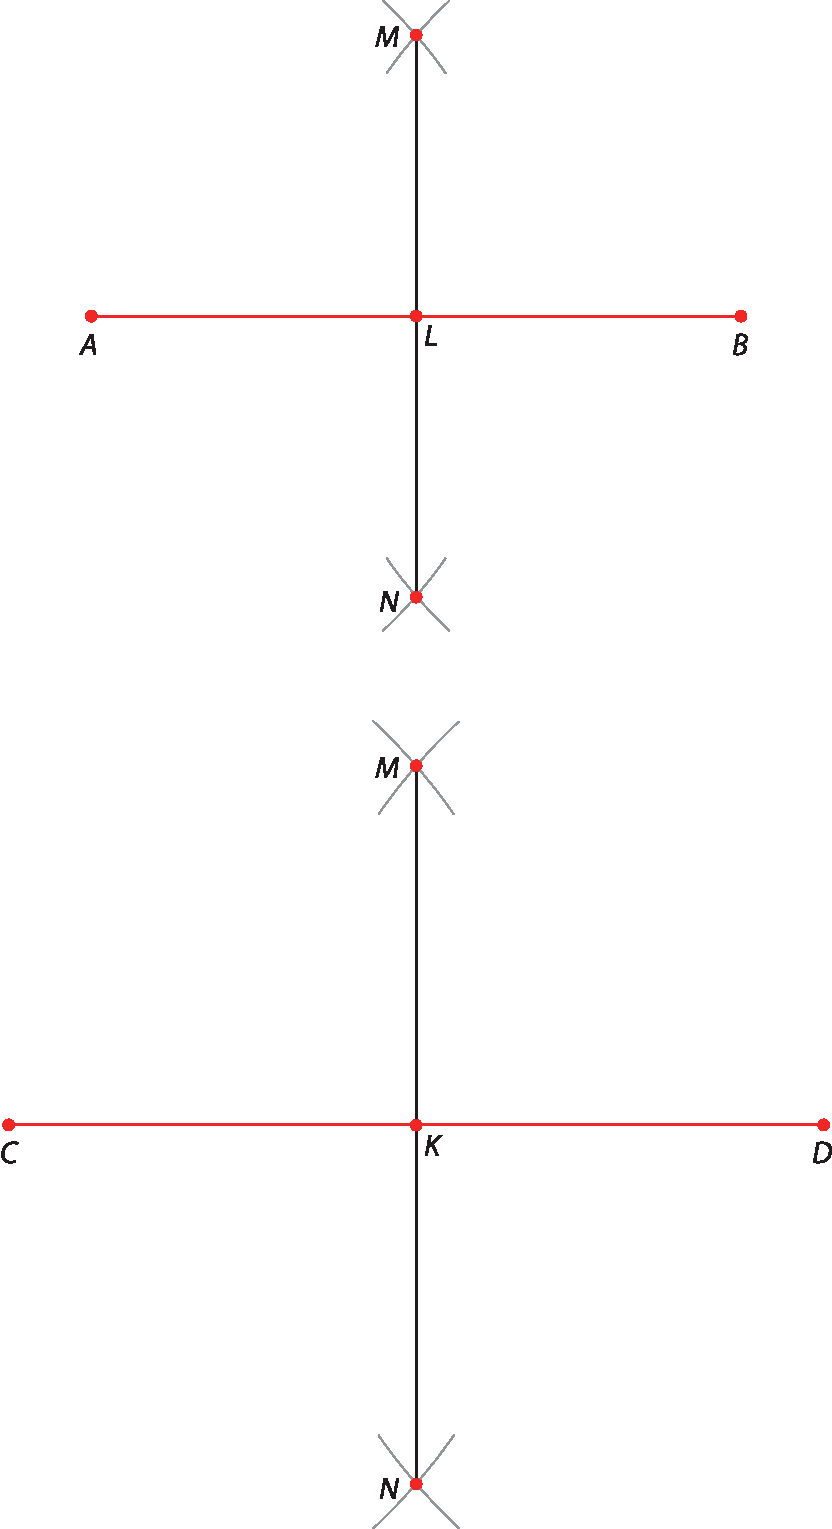 Figura geométrica: Segmento de reta horizontal AB com ponto L no centro. Segmento de reta vertical MN passando pelo ponto L, ponto médio de AB. Figura geométrica: Segmento de reta horizontal CD com ponto médio K indicado. Segmento de reta vertical MN passando pelo ponto K.